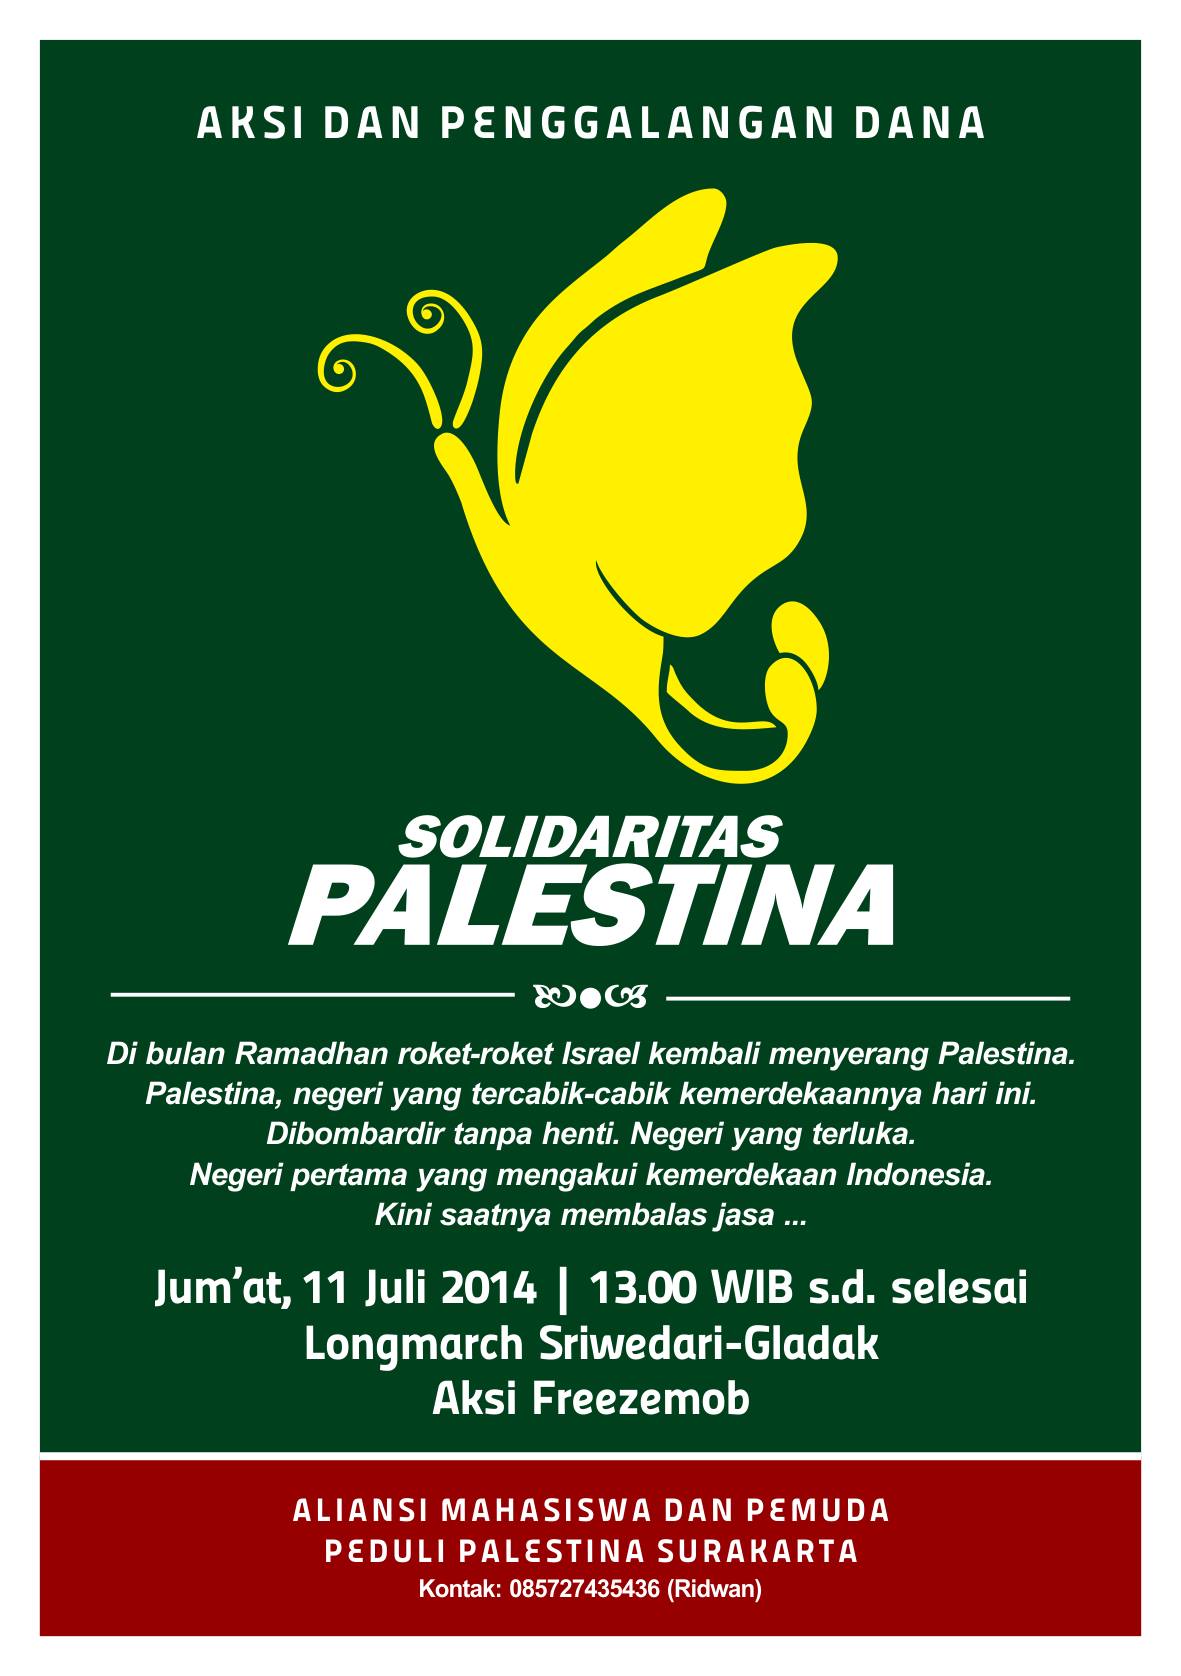 Aksi dan penggalangan dana  "Solidaritas untuk Palestina"